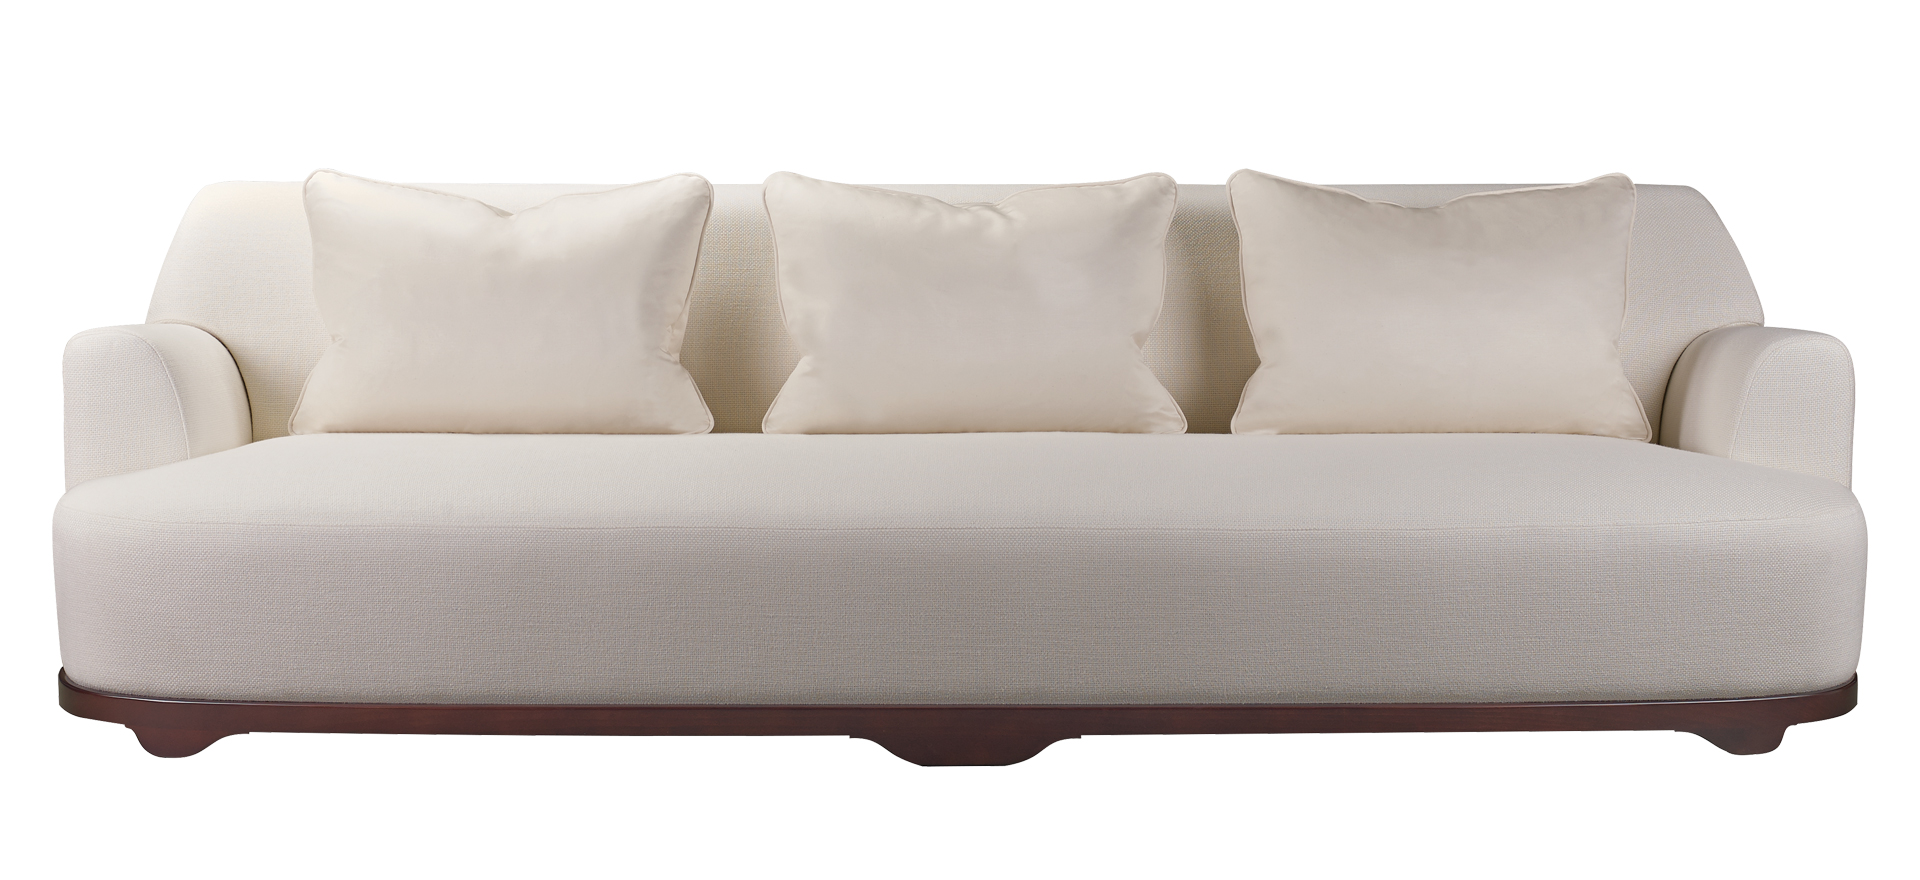 „Dorian“ ist ein in Größe und Form anpassbares Sofa aus Buchenholz mit Stoff- oder Lederbezug, aus dem Katalog von Promemoria | Promemoria